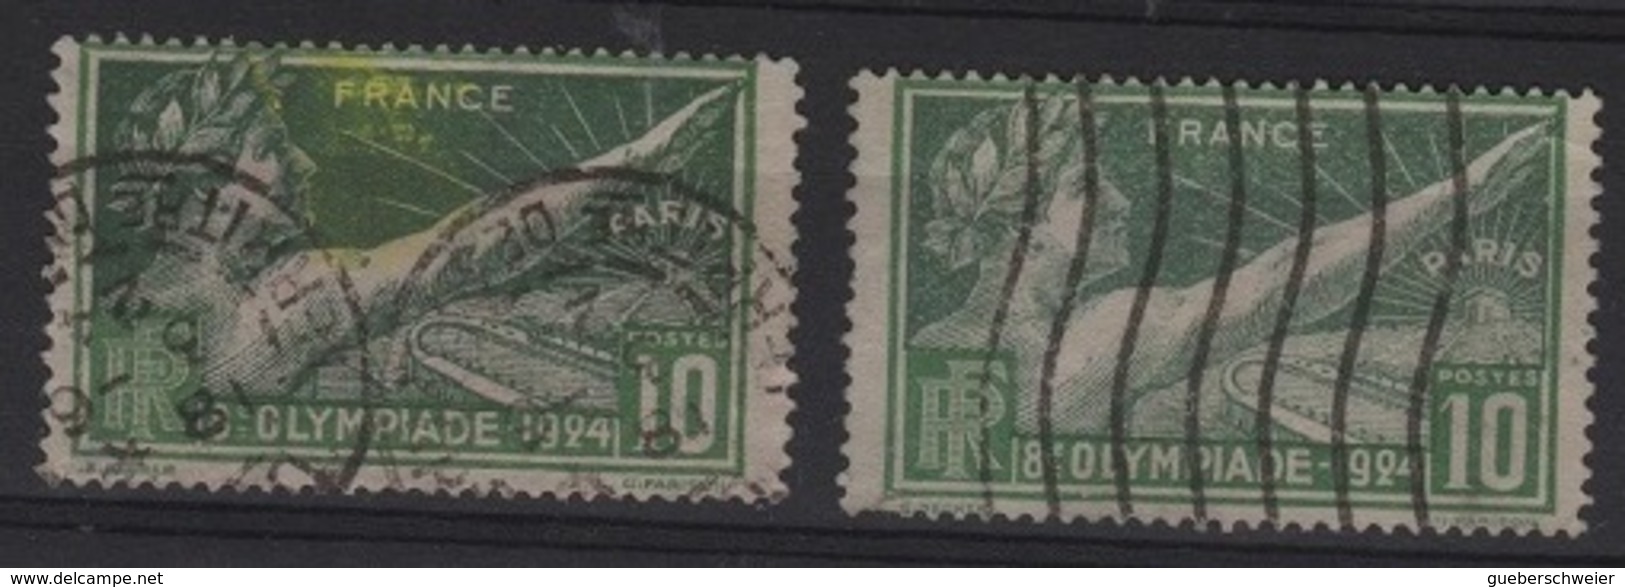 FR 1033 - FRANCE N° 183 Obl. Jeux Olympiques De Paris Variété Tache Jaune Dans Le Rayon De Soleil - Used Stamps